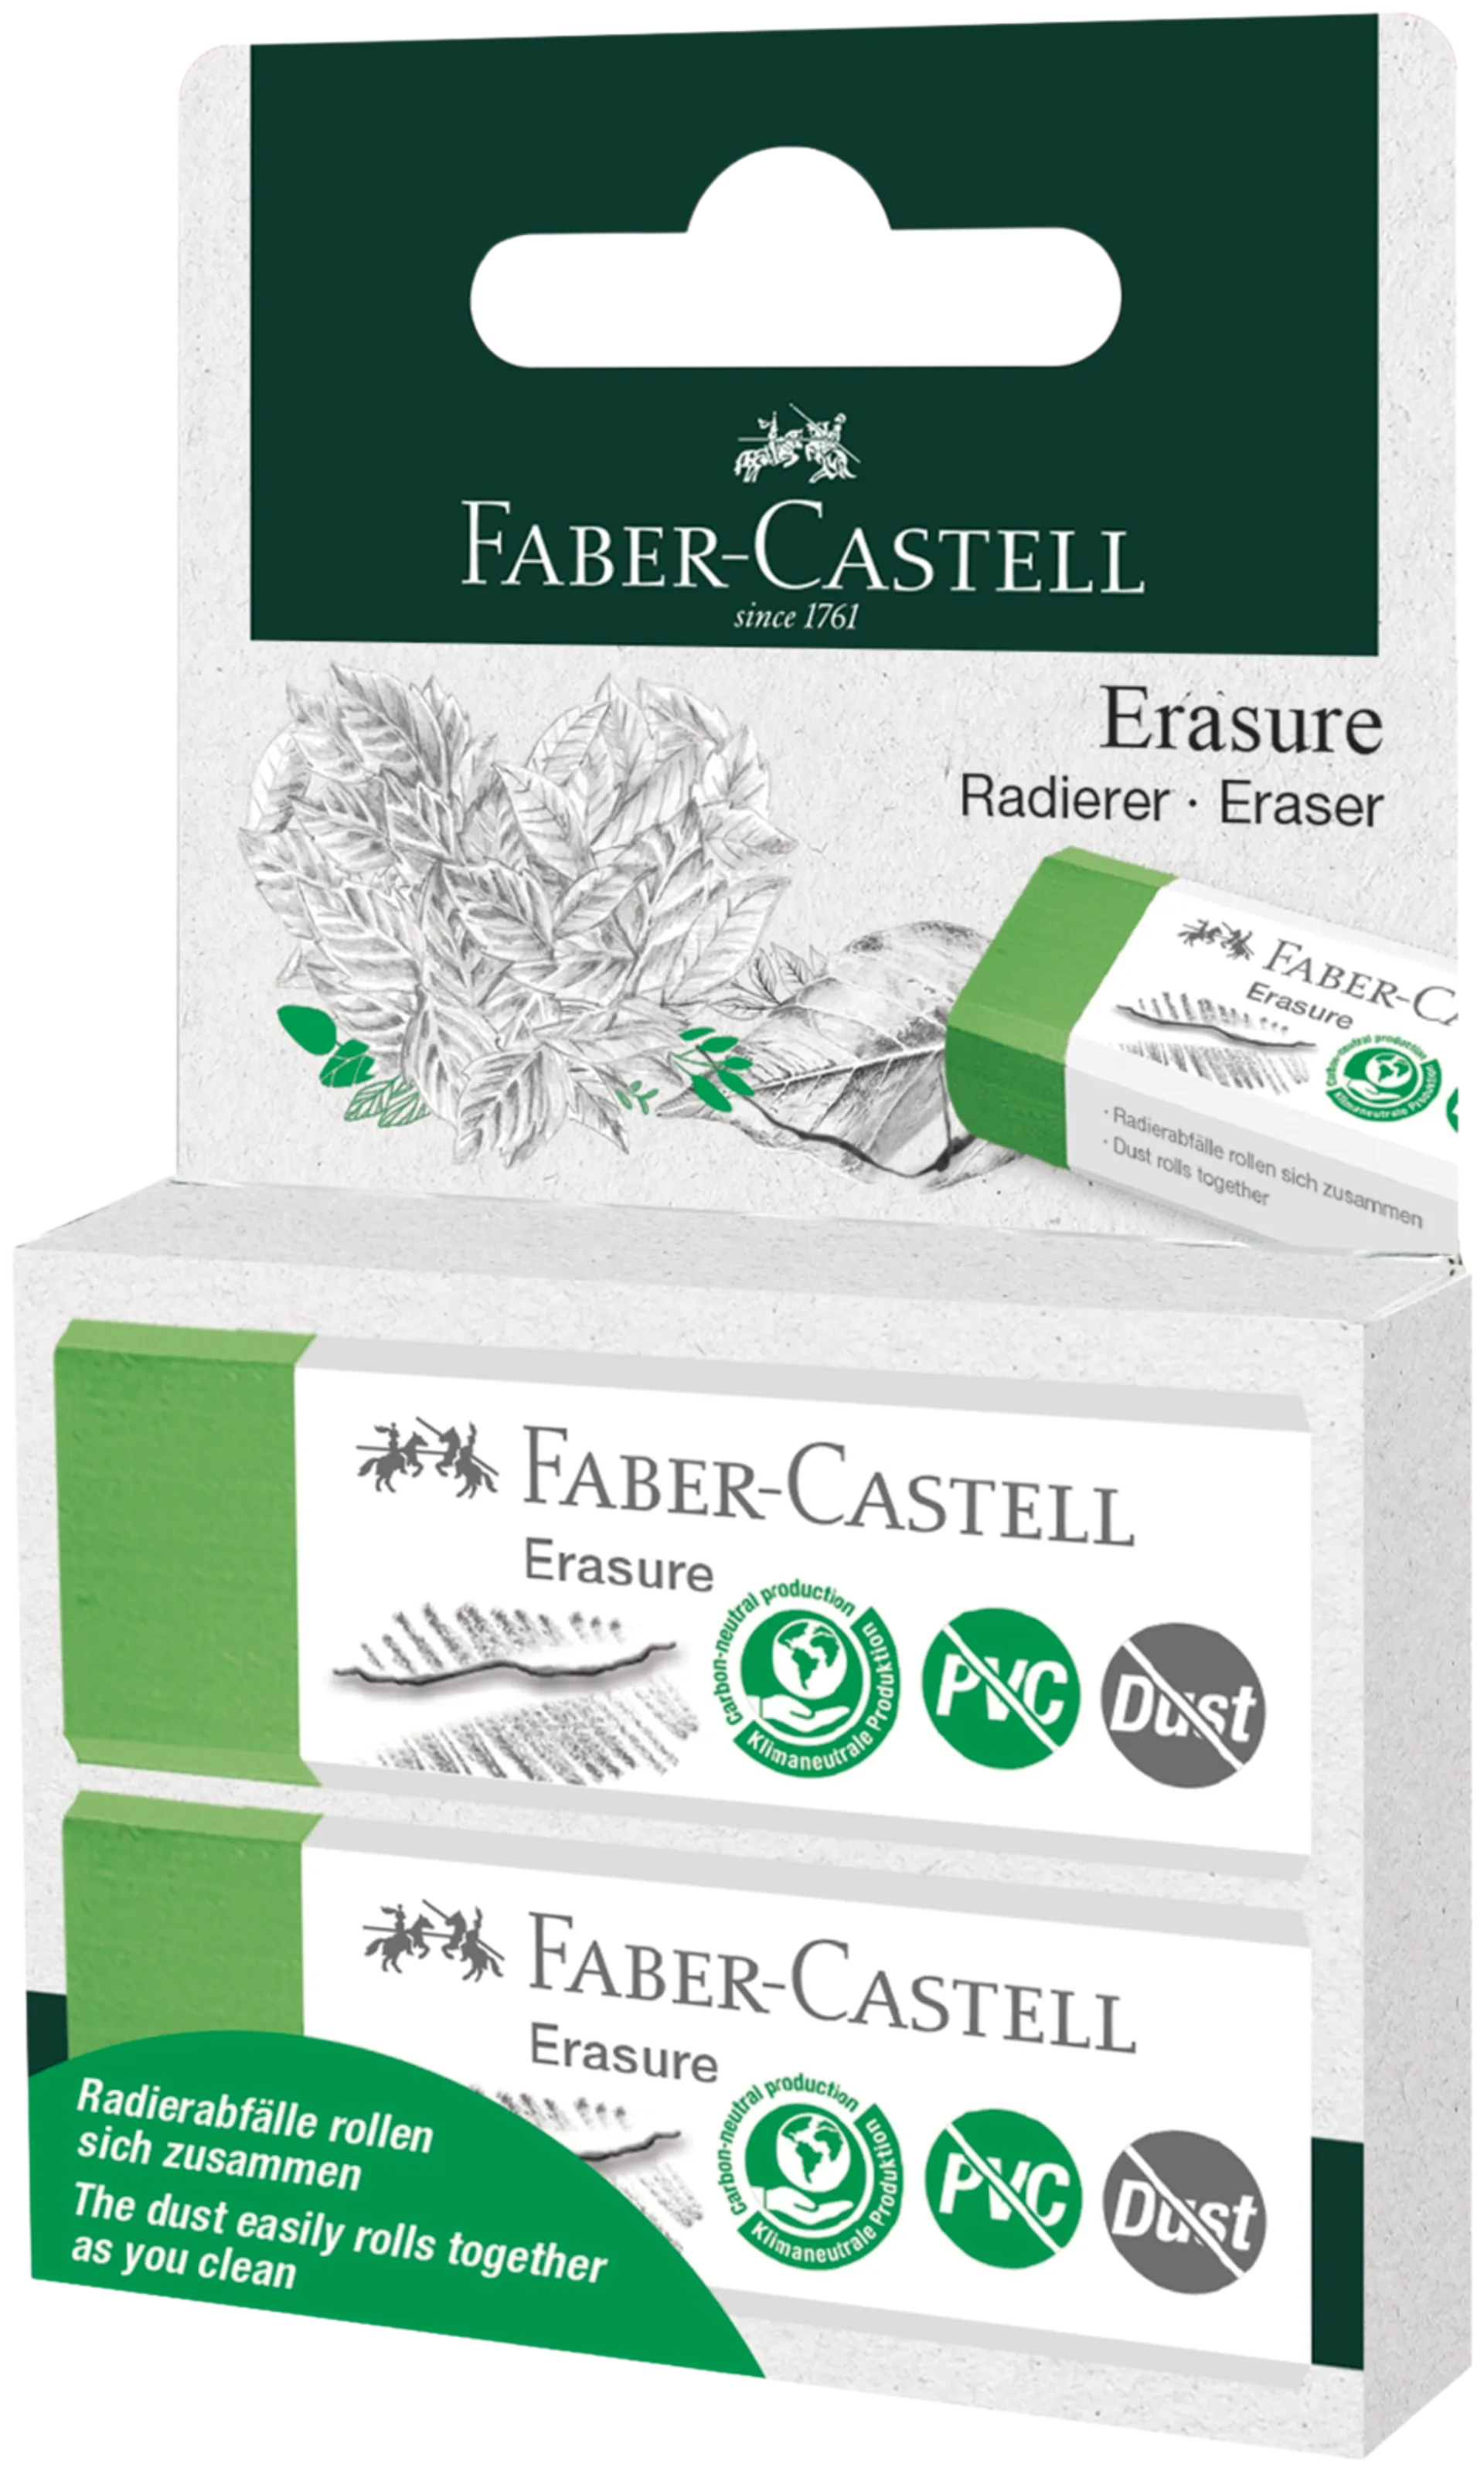 Faber-Castell Erasure pyyhekumi PVC-vapaa & roskaamaton 2kpl/pakkaus